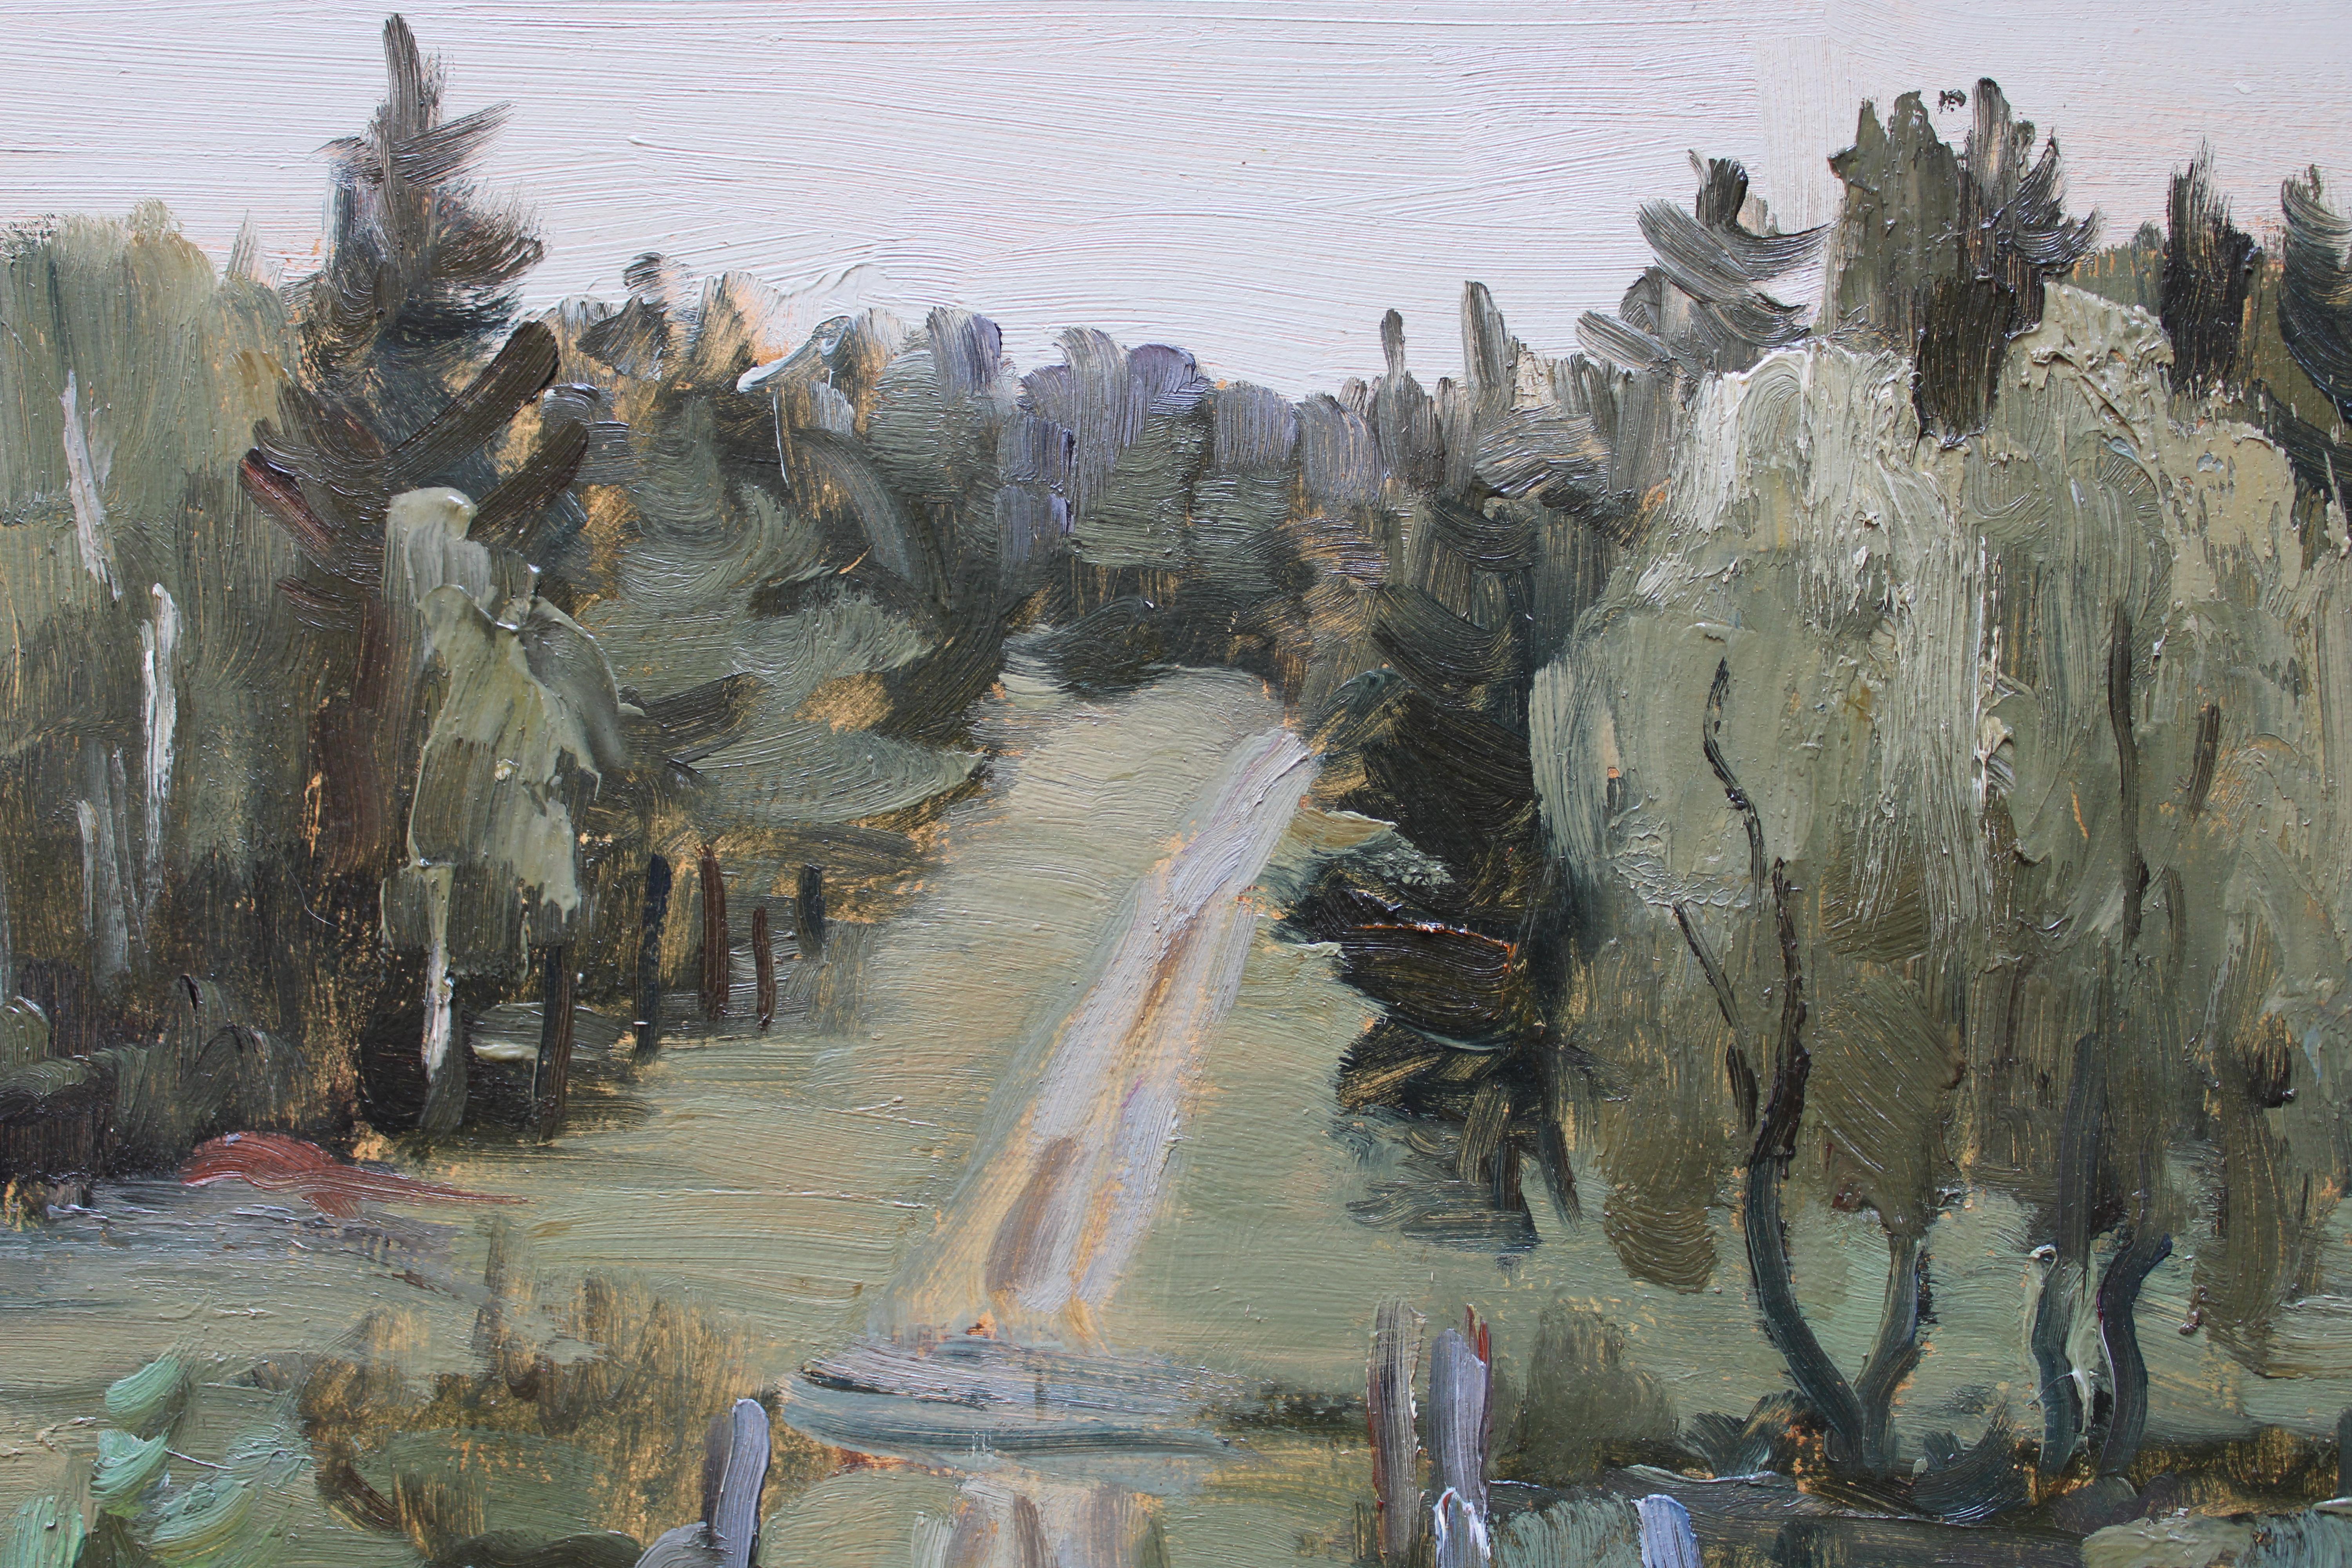 Route rurale. Carton, huile, 50x60 cm - Réalisme Painting par Stanislav Ivanicki 